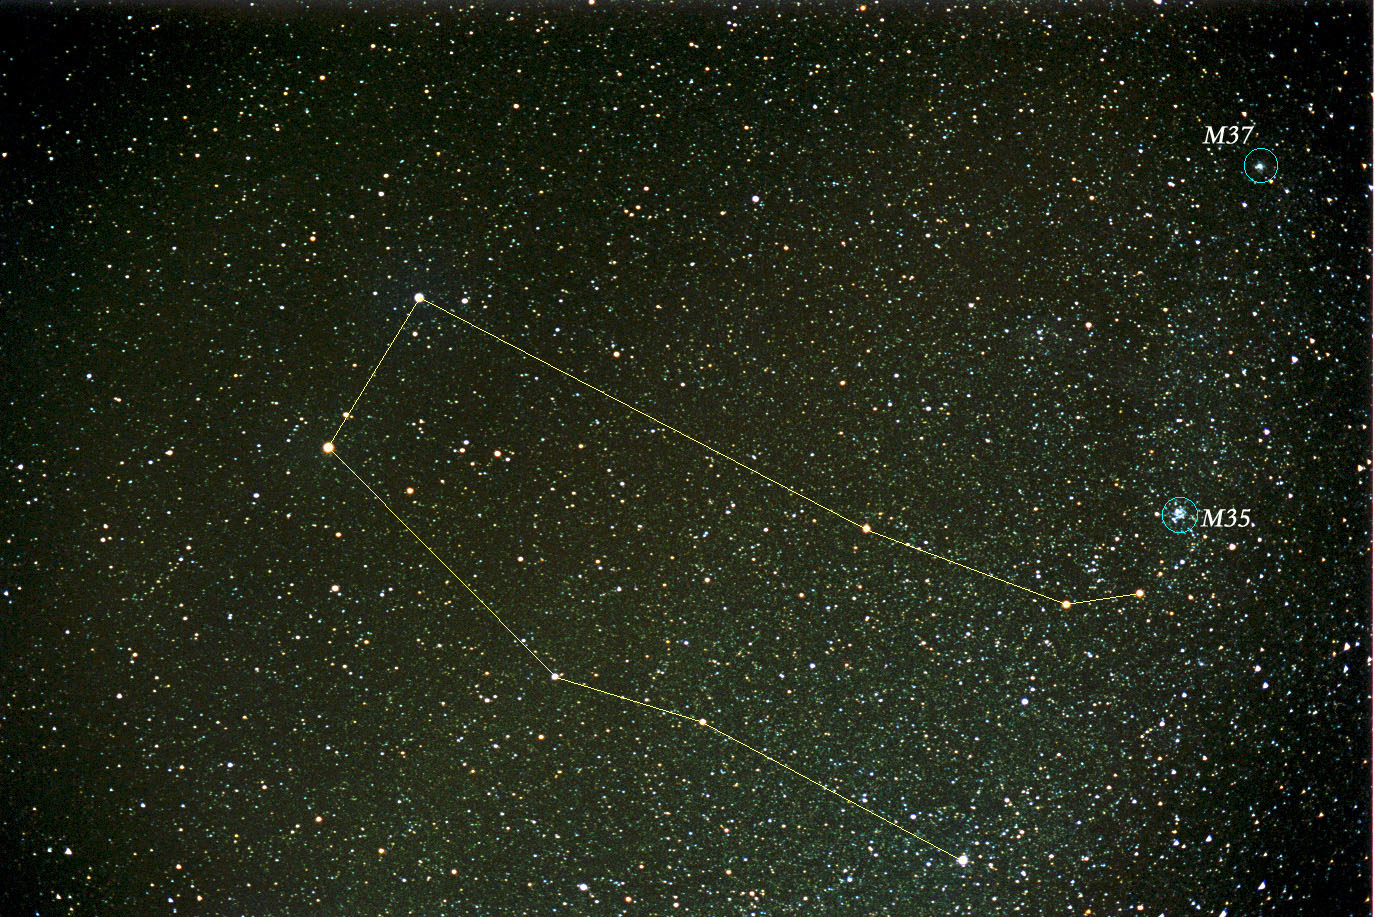 星座图的B双子星座 库存照片. 图片 包括有 黄道带, 线路, 星形, 图表, 符号, 破折号, 映射, 空间 - 34474006